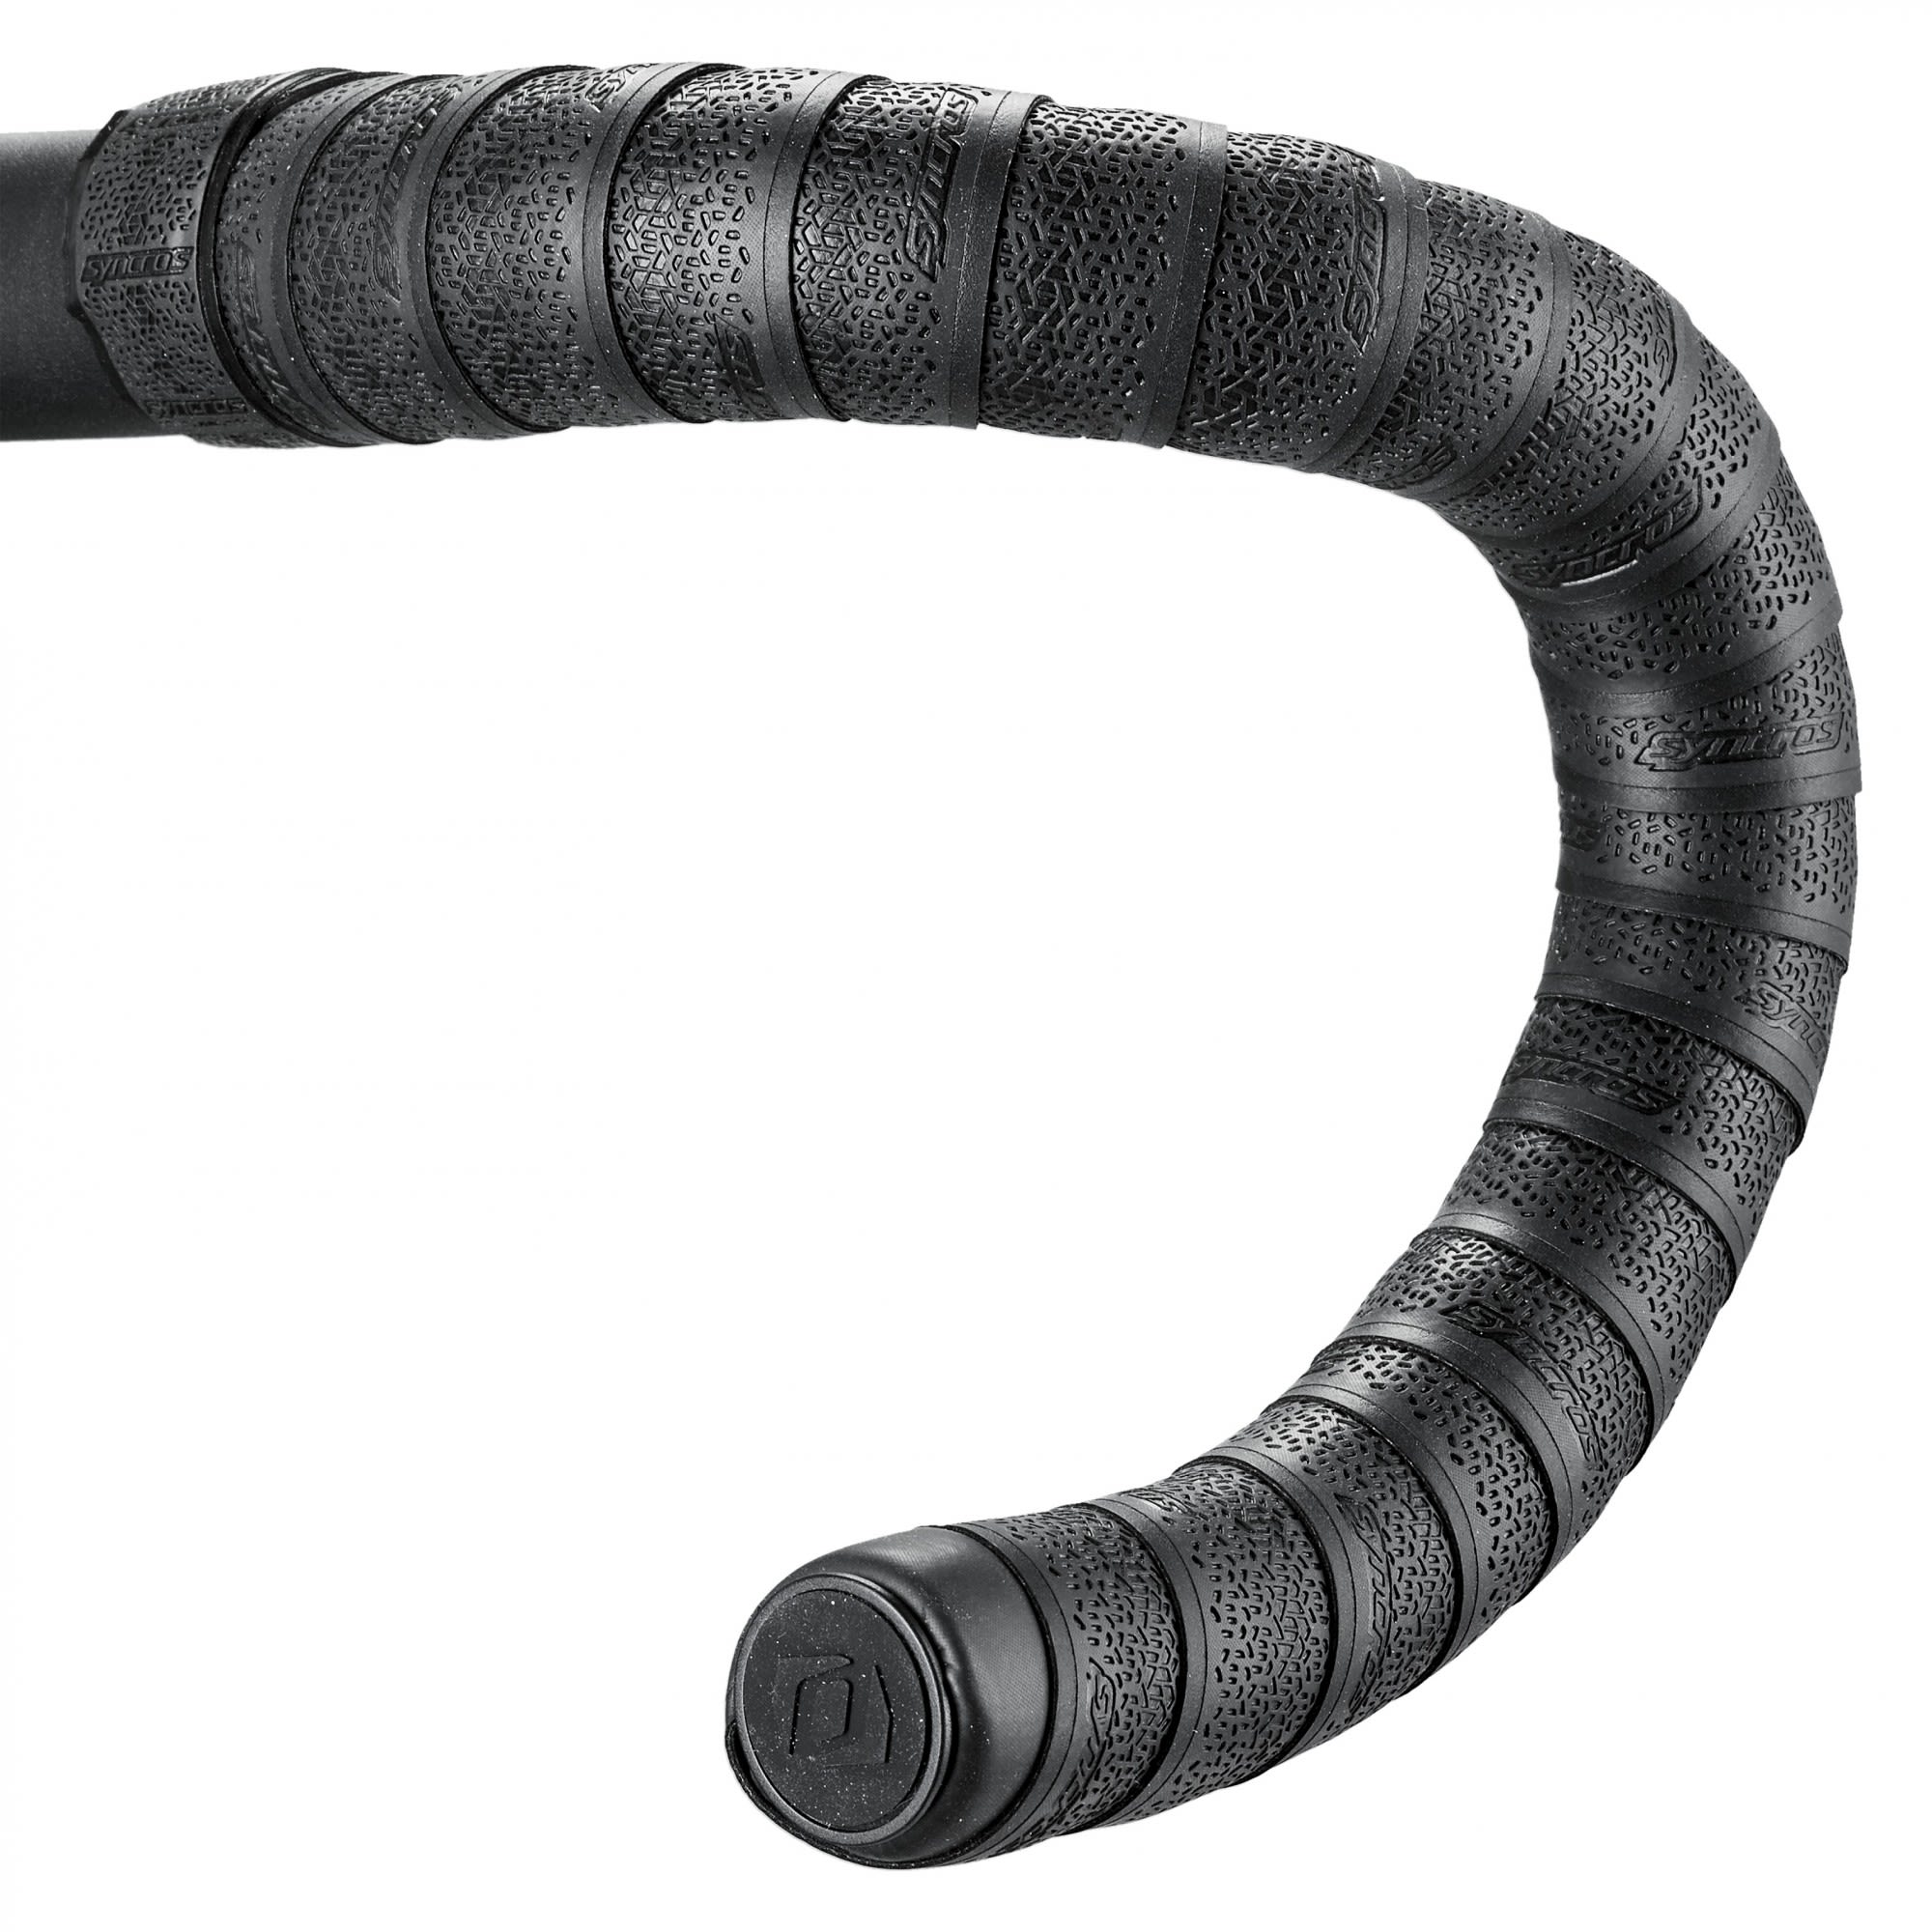 Syncros Extrem Leichtes Lenkerband Schwarz- Zubehr- Reparatur und Wartung- Grsse One Size - Farbe Black